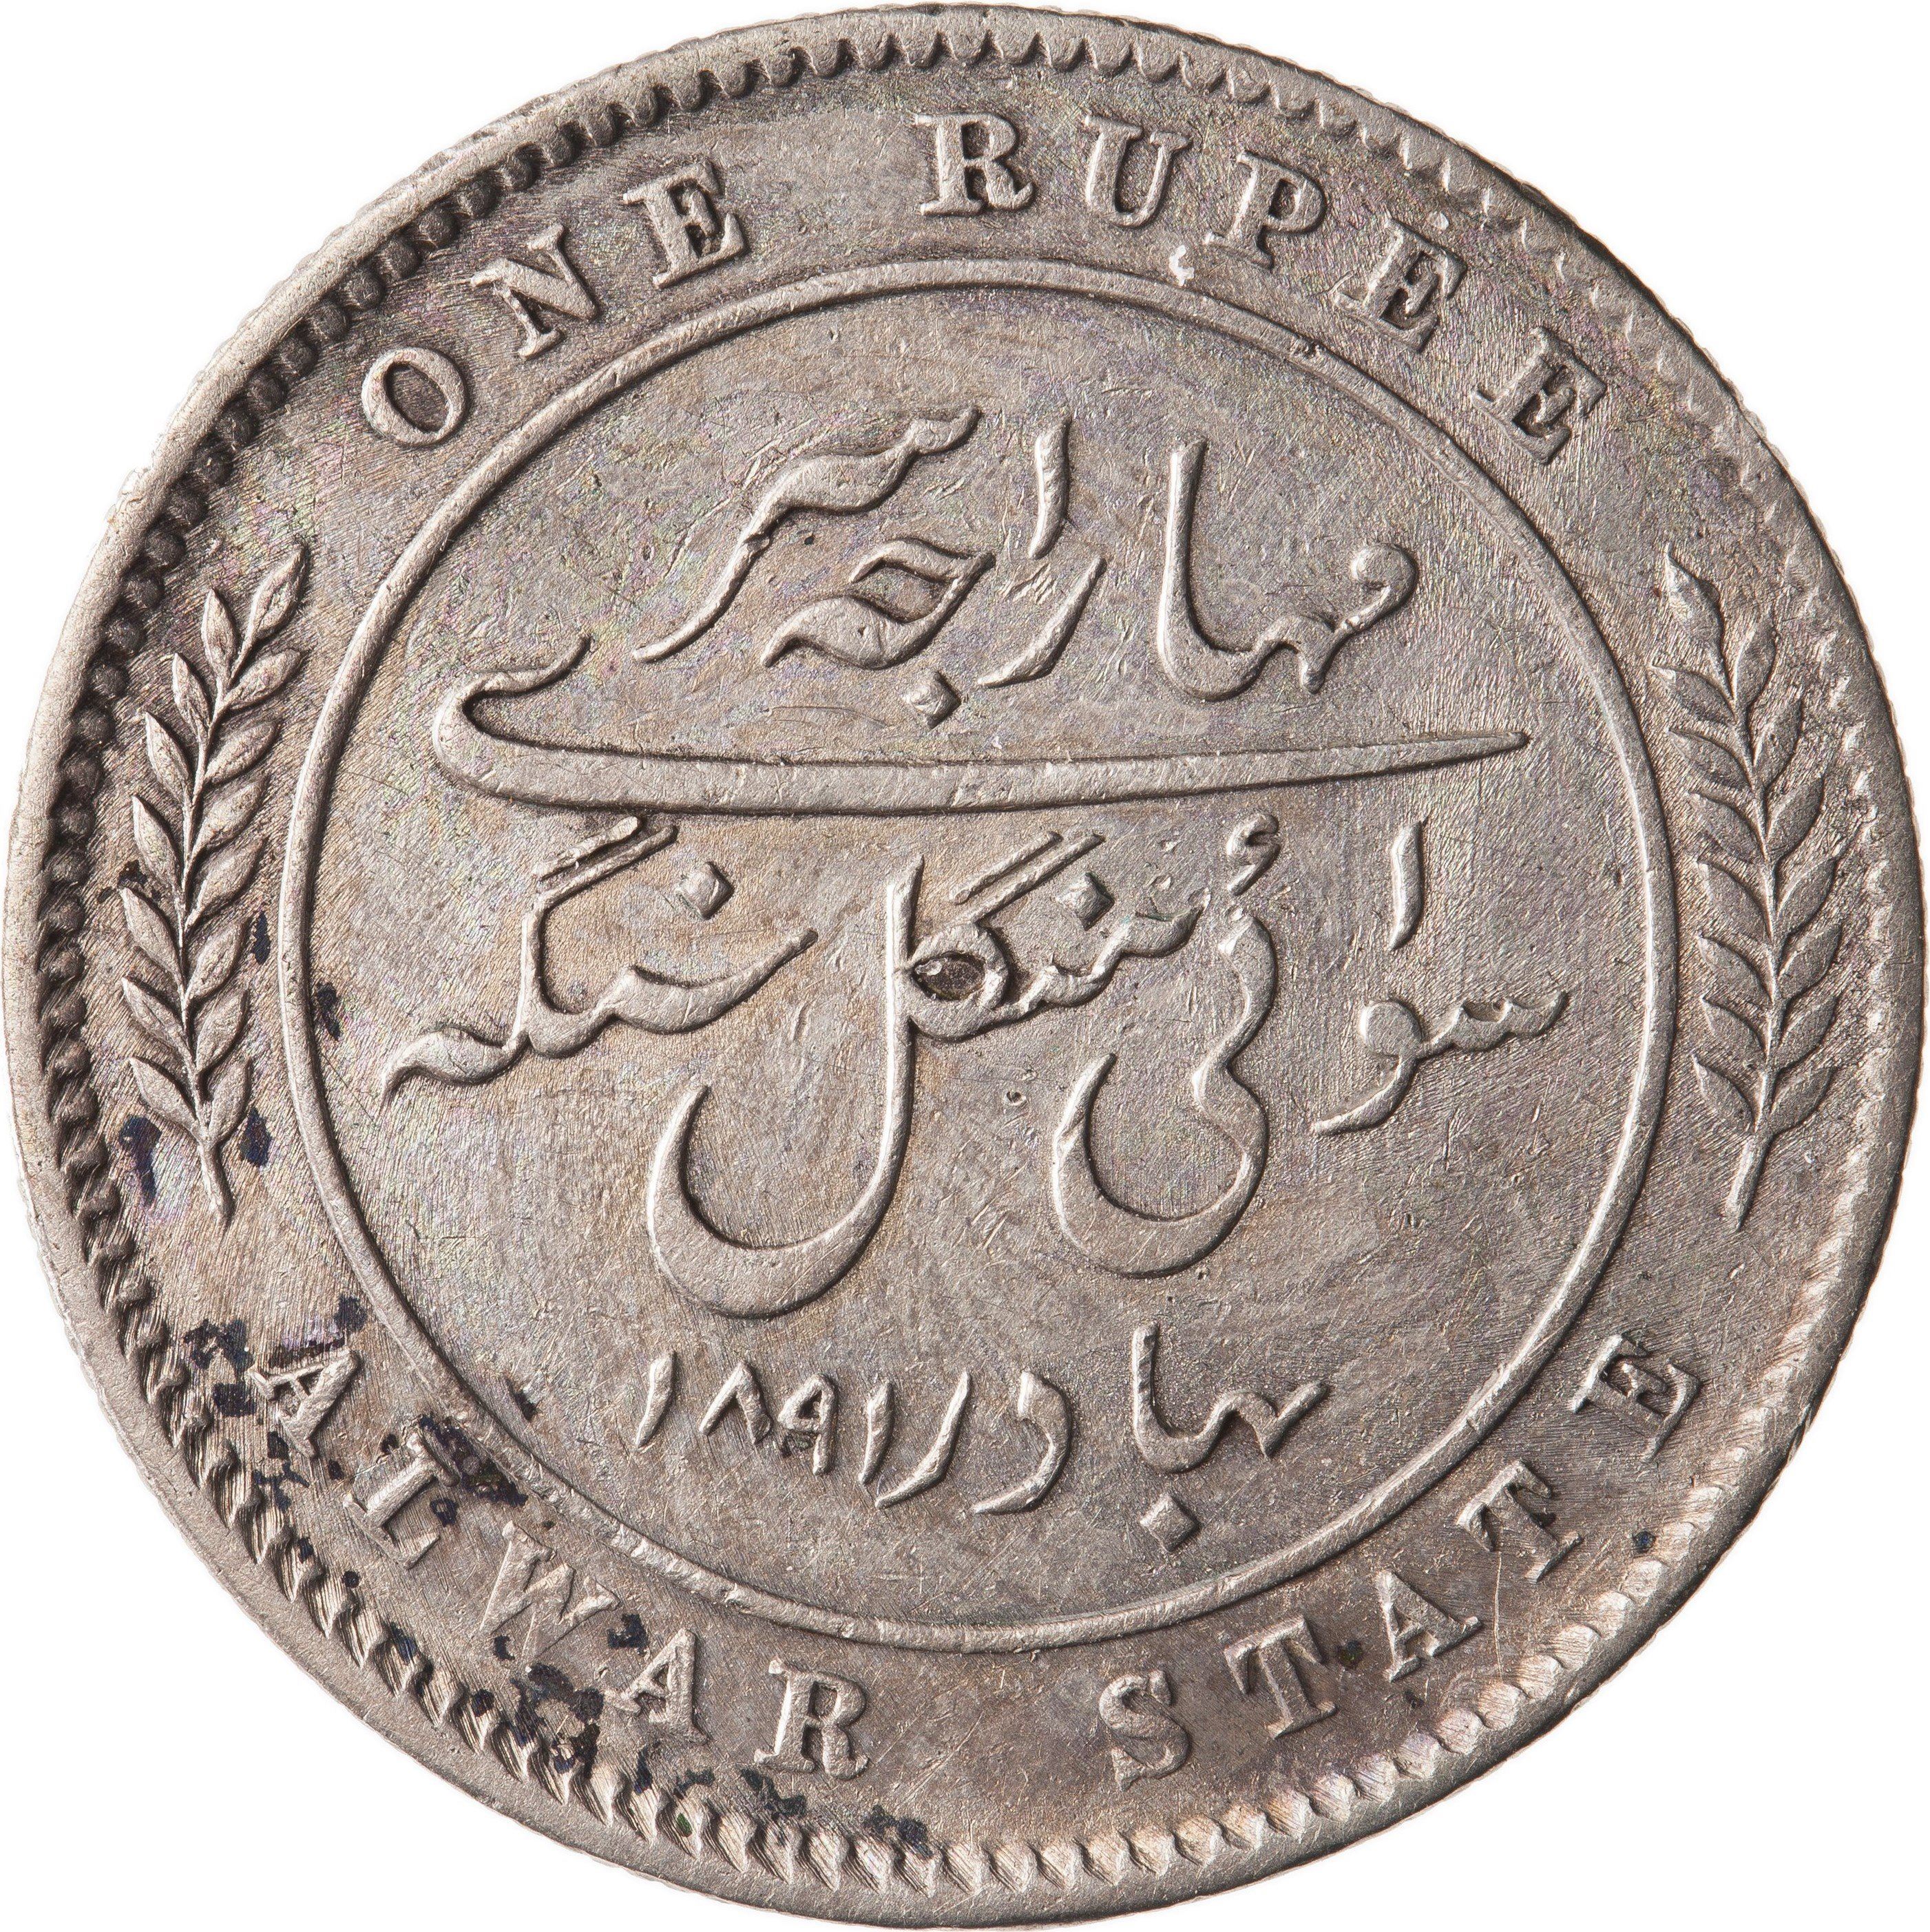 Alwar rupee second reverse